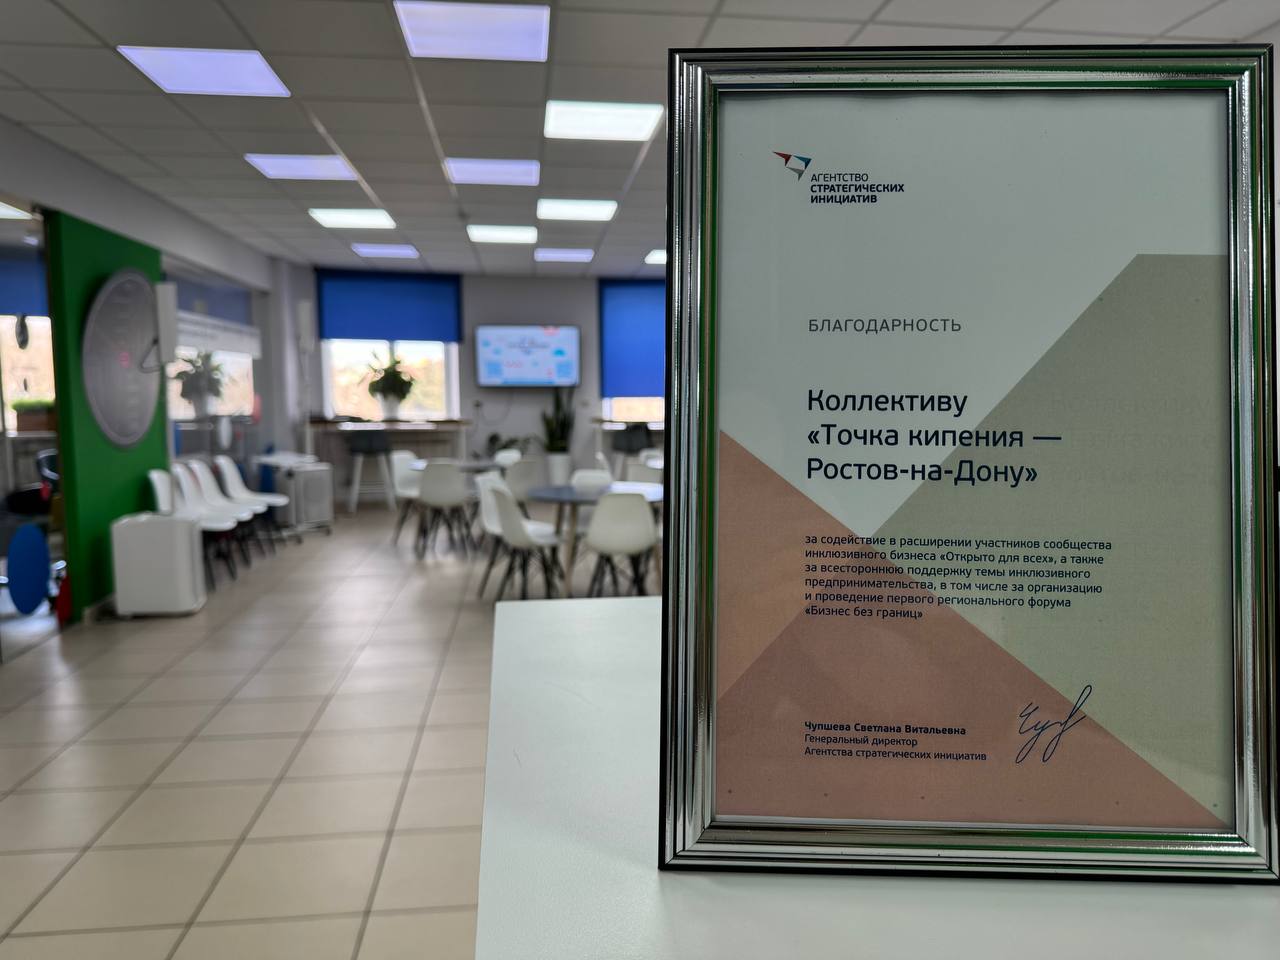 Региональная «Точка кипения» Ростова-на-Дону получила благодарность АСИ за поддержку инклюзивного предпринимательства